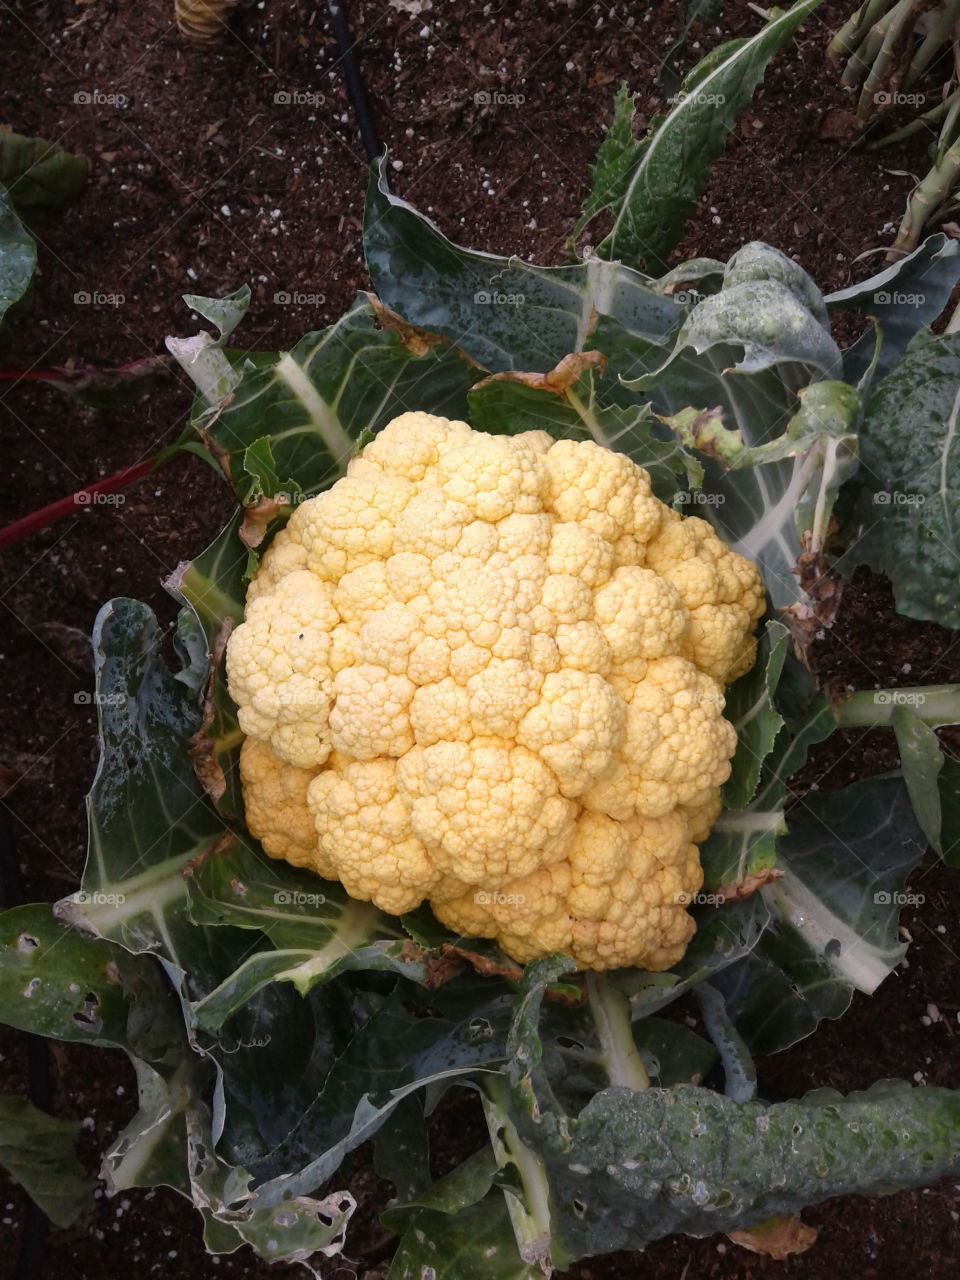 yellow cauliflower